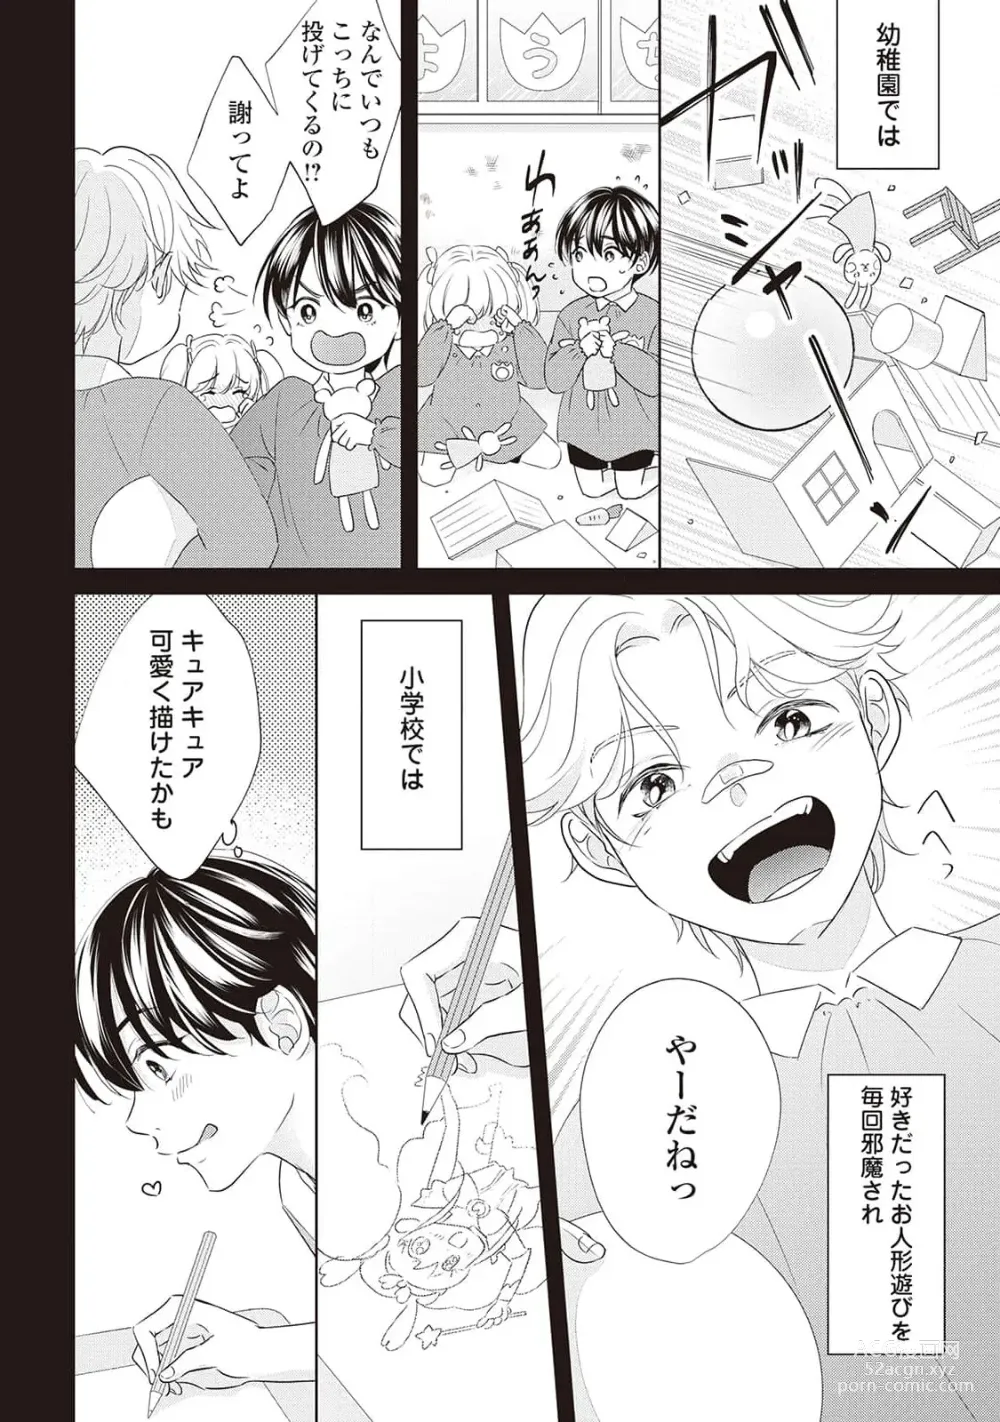 Page 12 of manga Fudanshi no Ore ga Youkya Osananajimi ni Semarareteru Ken